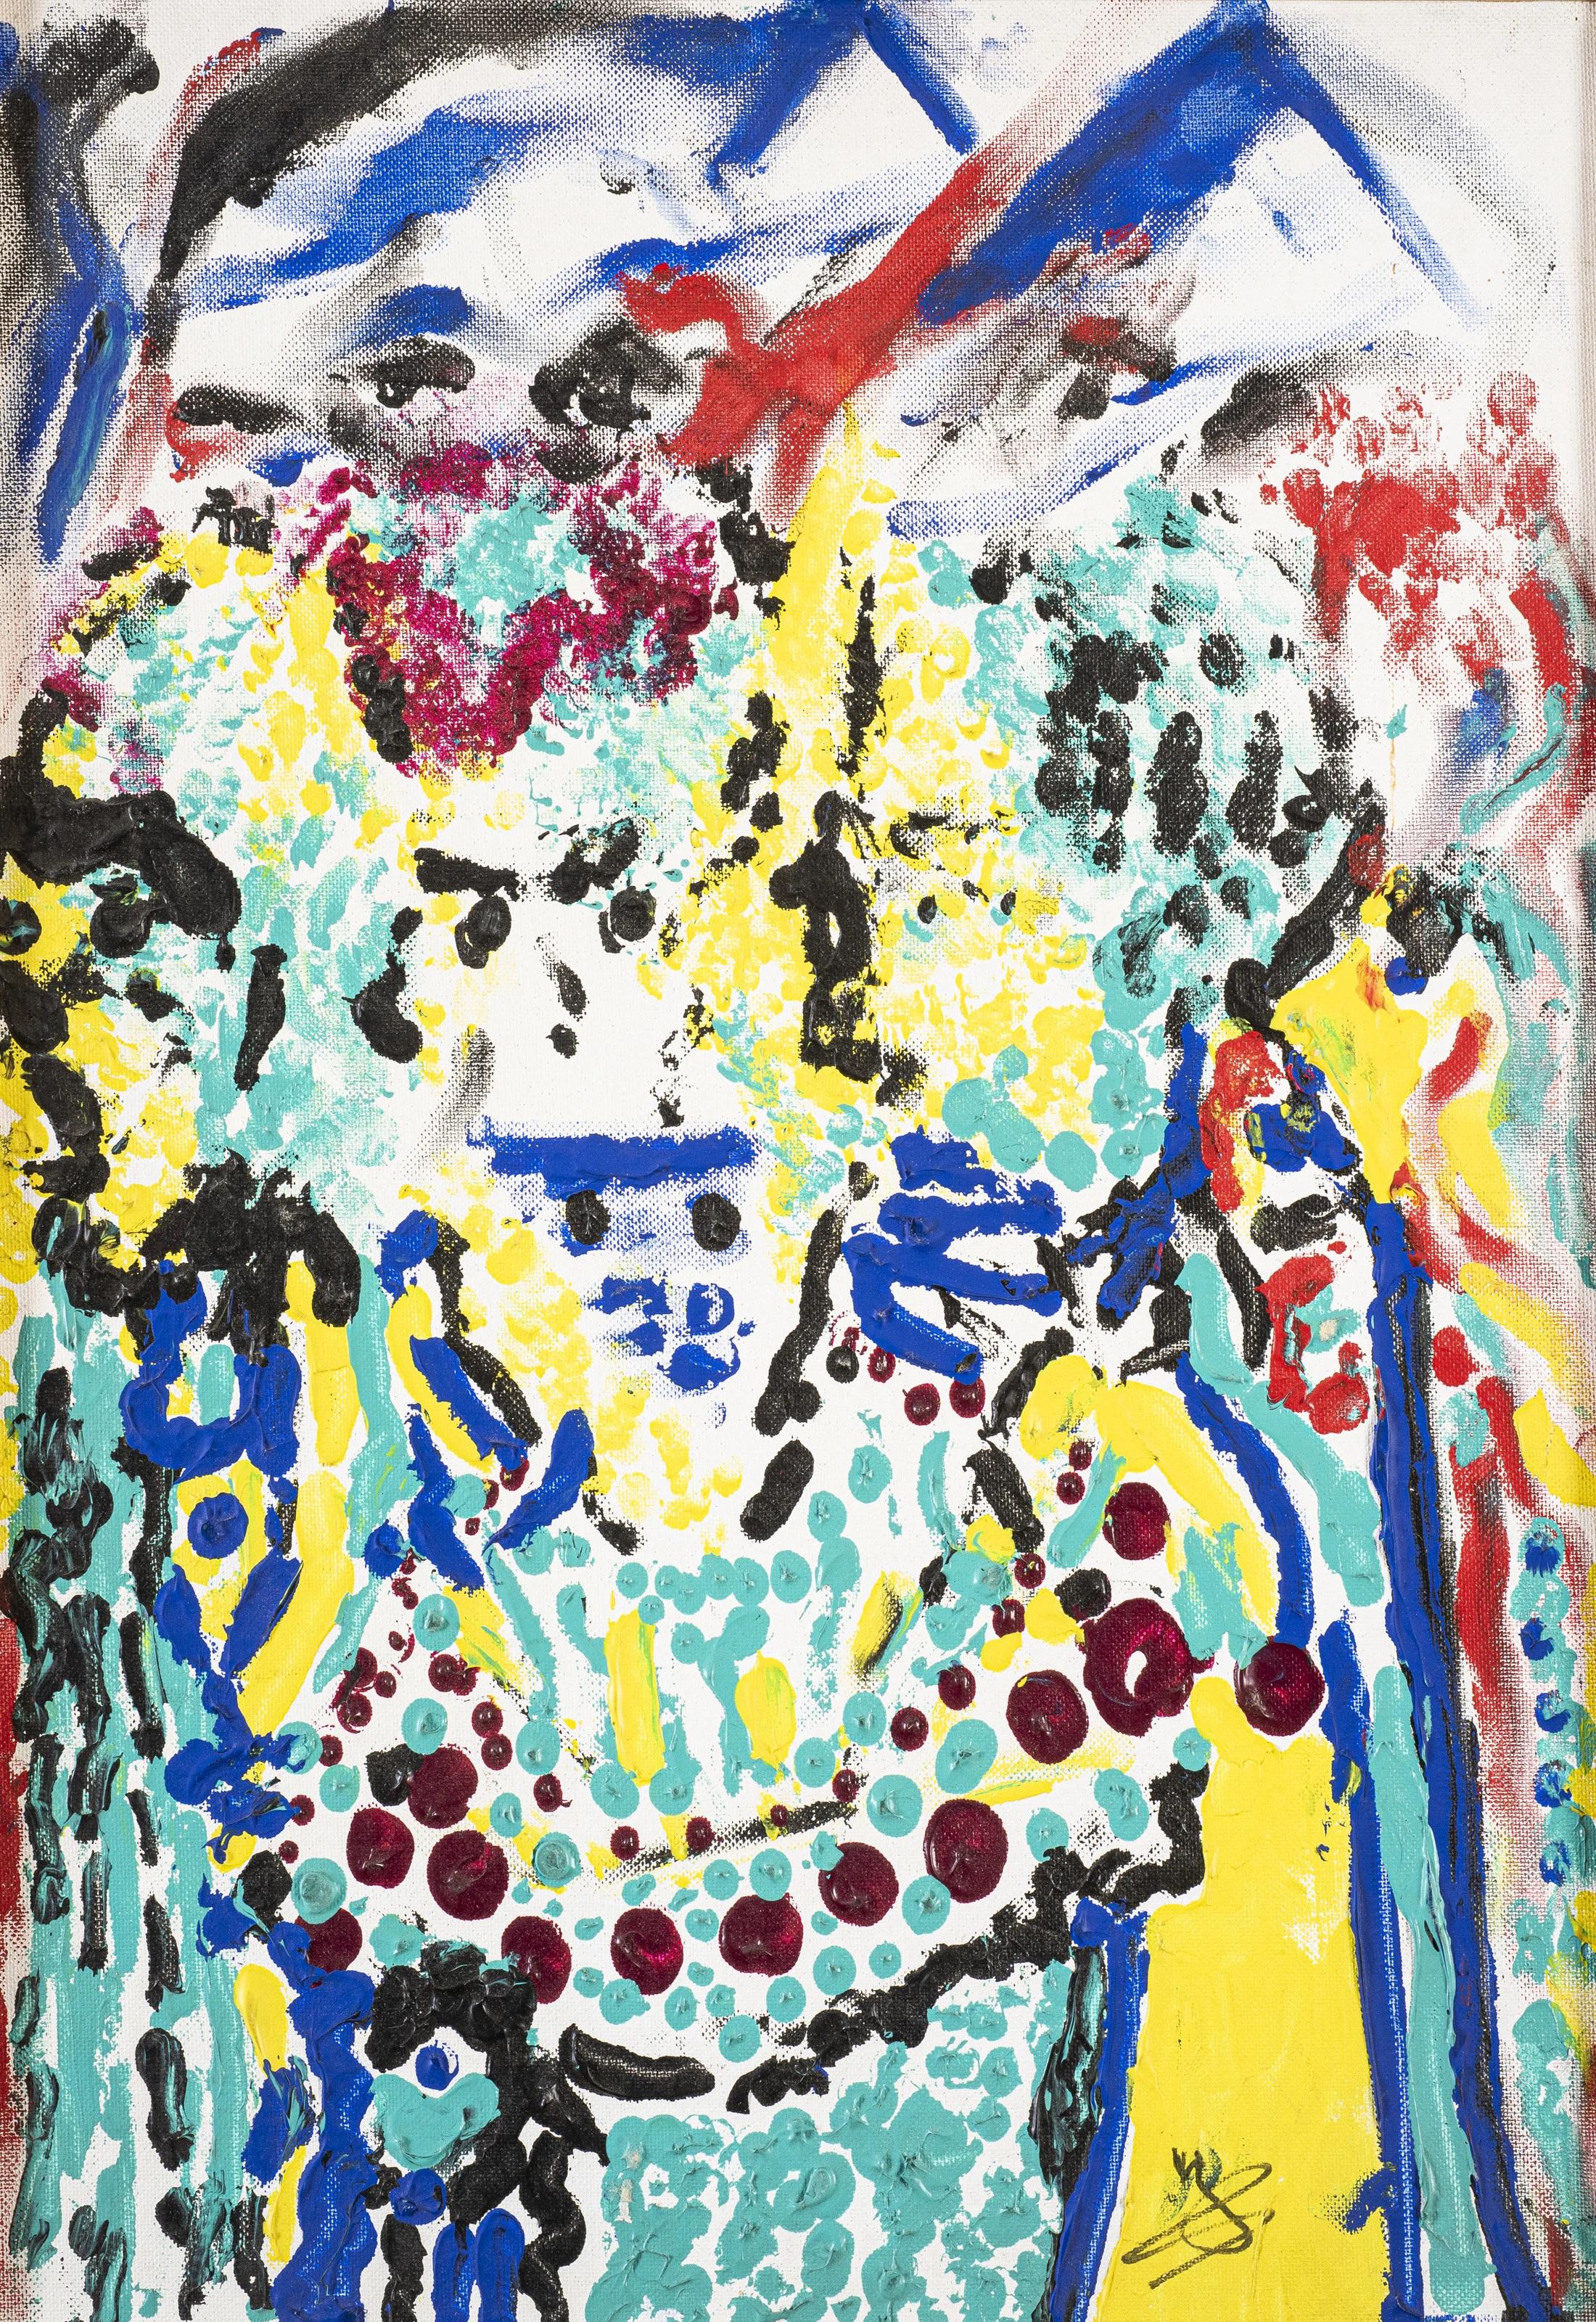 "Composition abstraite 4" Peinture à l'huile abstraite 20" x 16" pouces par Youssef Sida

Signé 
Vers 1989


Youssef Sida
1922-1994
Né en 1922 à Damiette, il obtient en 1945 son diplôme de l'Institut supérieur d'art éducatif. En 1947, il participe à